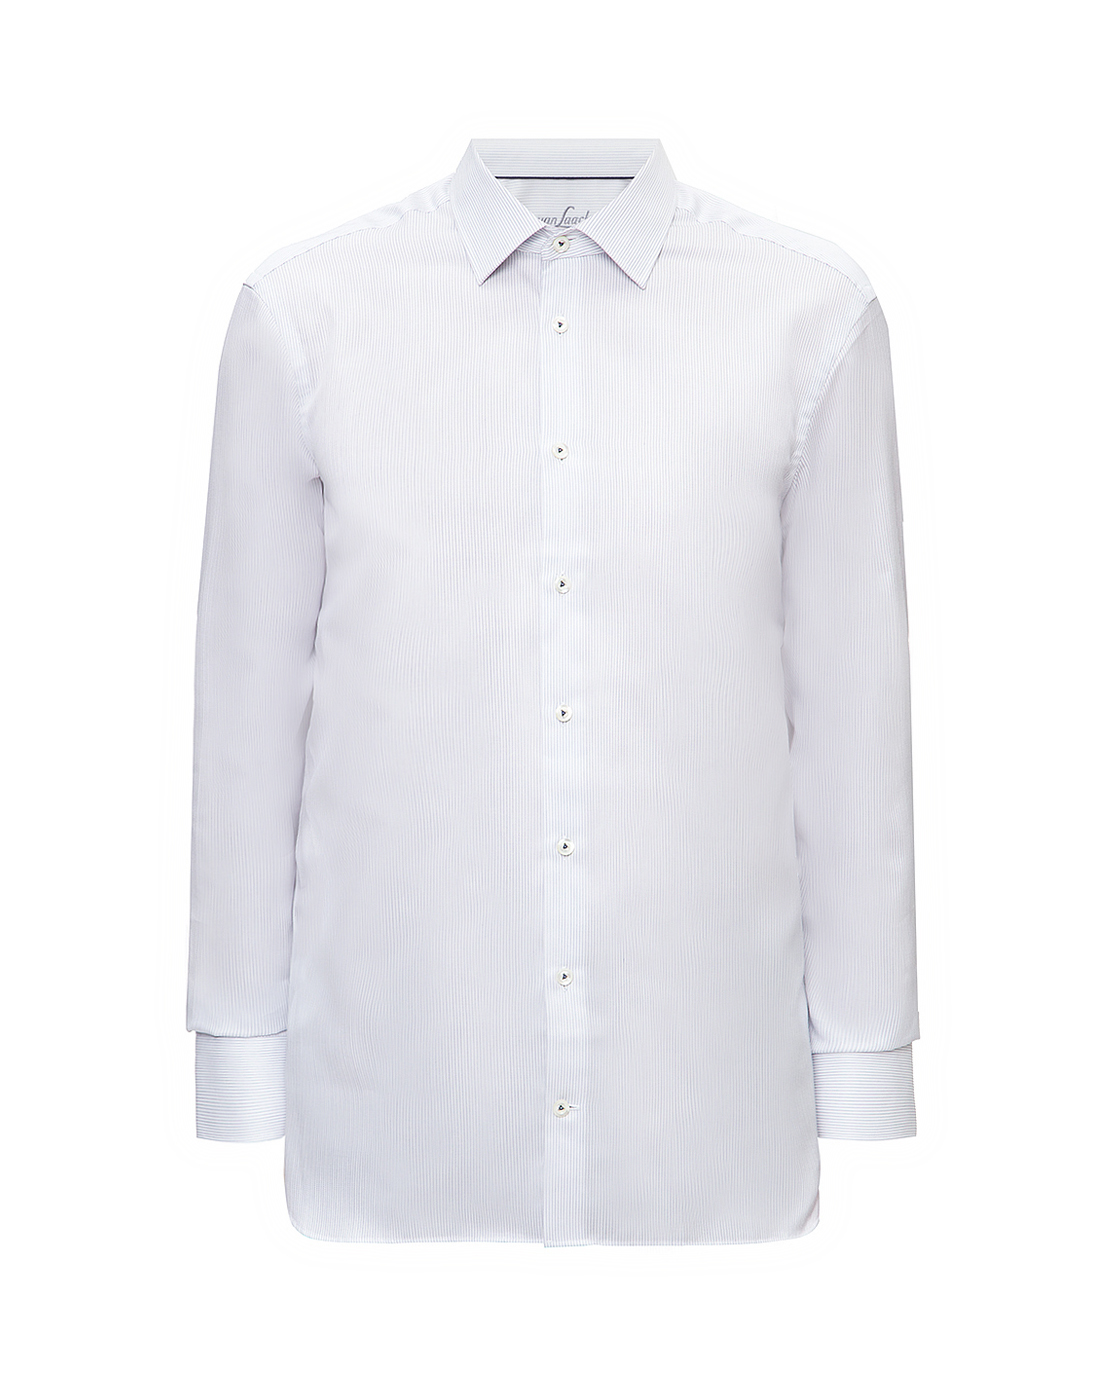 Мужская белая рубашка в полоску Van Laack S151382/780-1